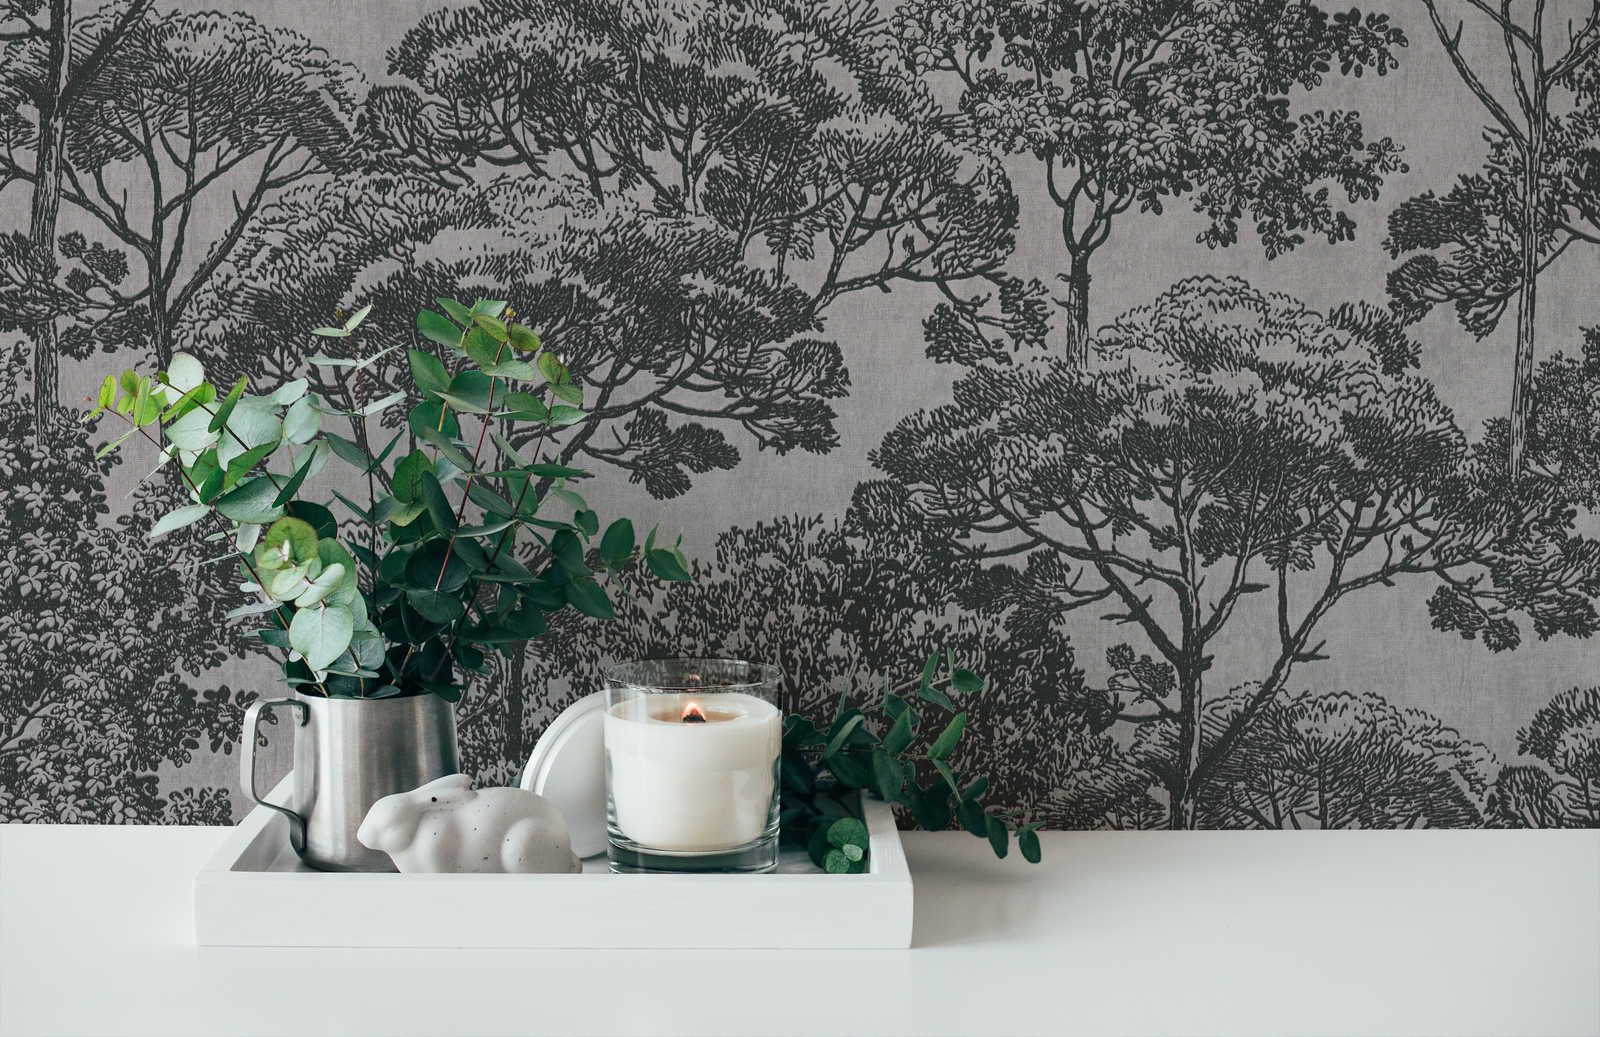             Tree wallpaper linen look in colonial style - beige, black
        